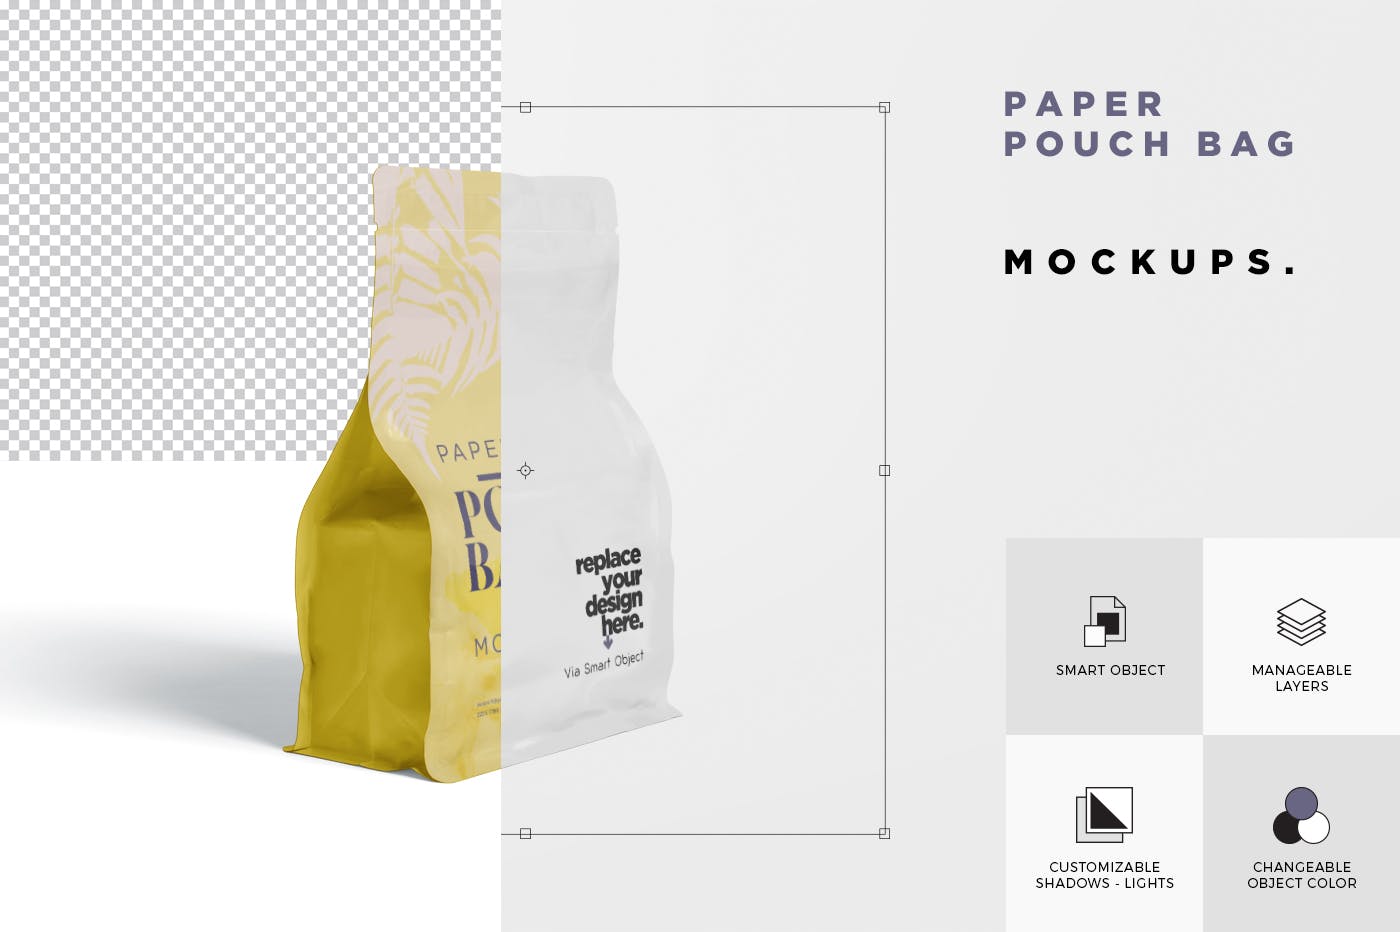 零食包装纸袋/塑料袋设计效果图样机 Paper Pouch Bag Mockup插图(5)